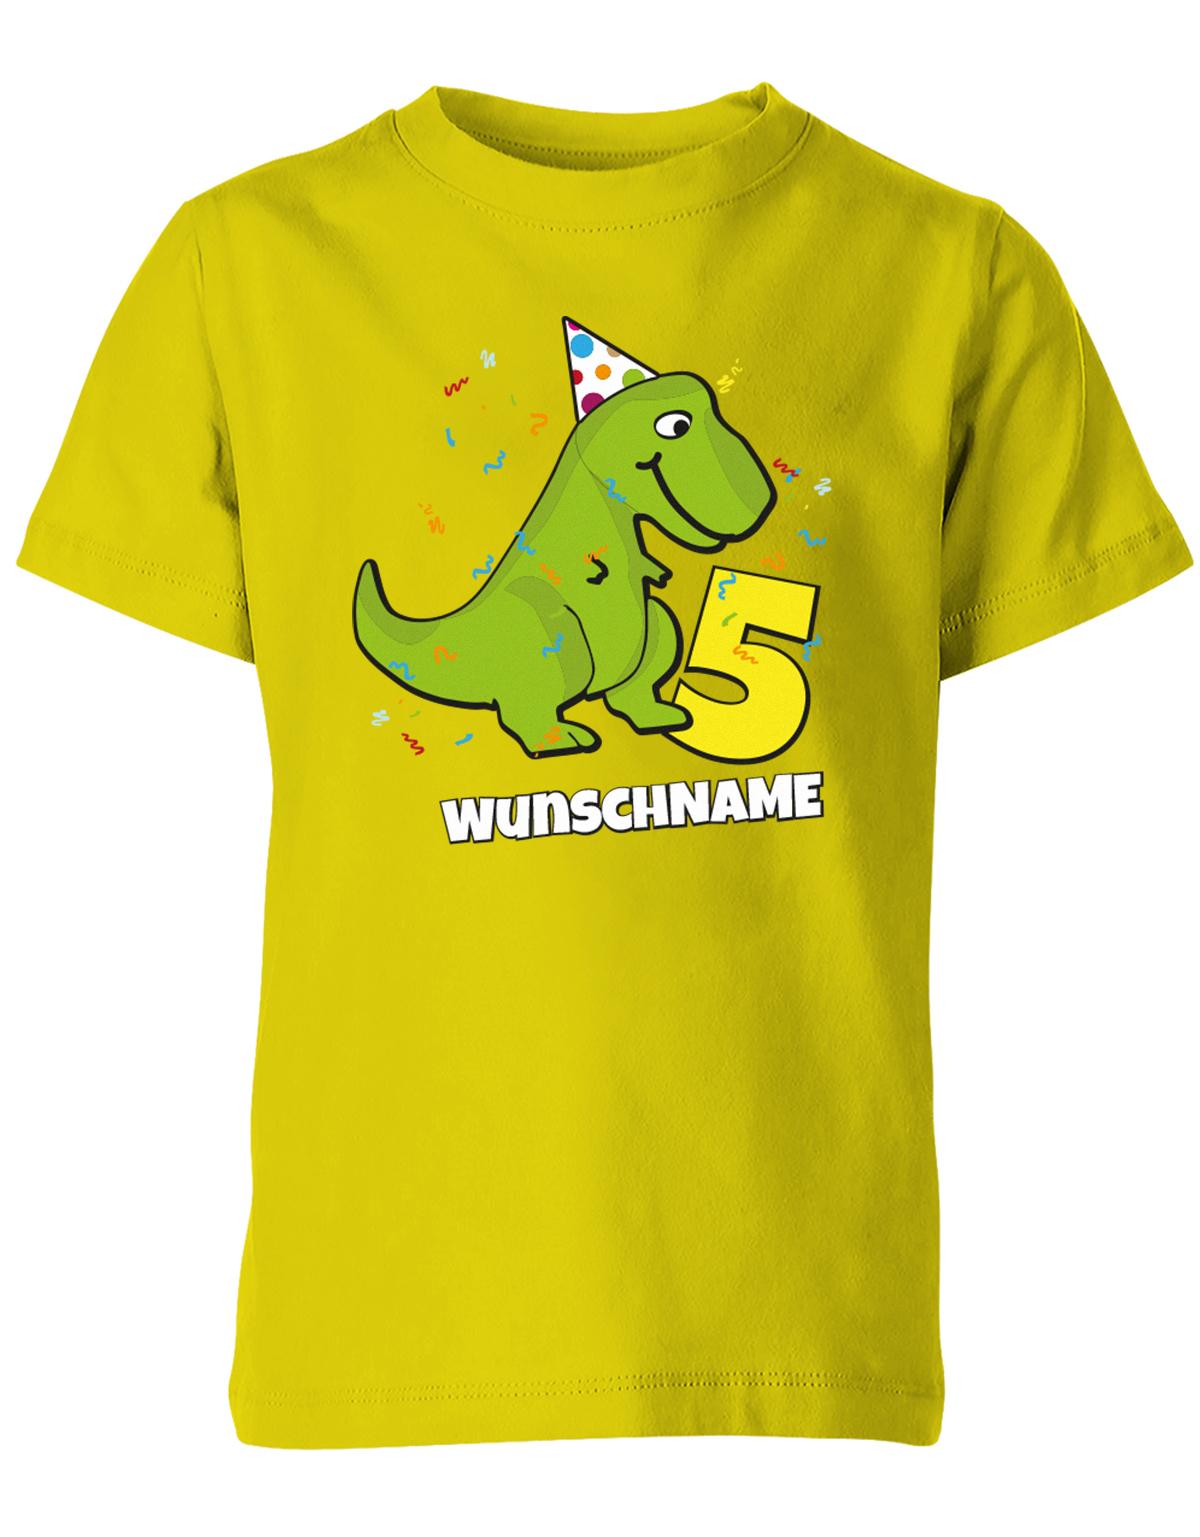 ich-bin-5-Dinosaurier-t-rex-wunschname-geburtstag-kinder-shirt-gelb